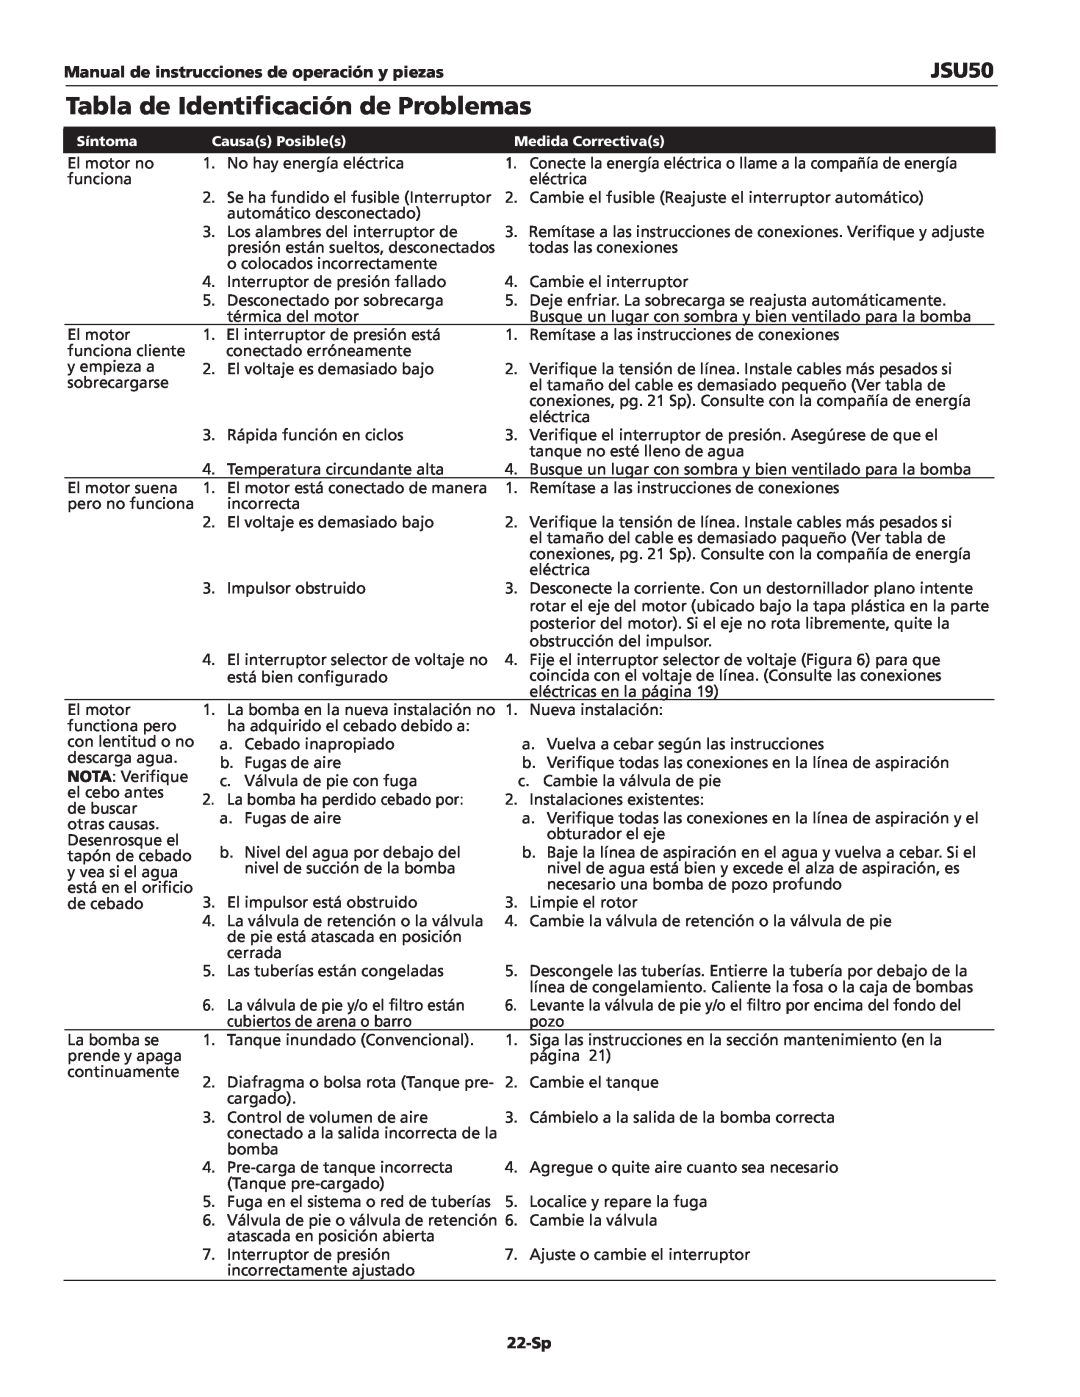 Wayne JSU50 Tabla de Identificación de Problemas, 22-Sp, Manual de instrucciones de operación y piezas 